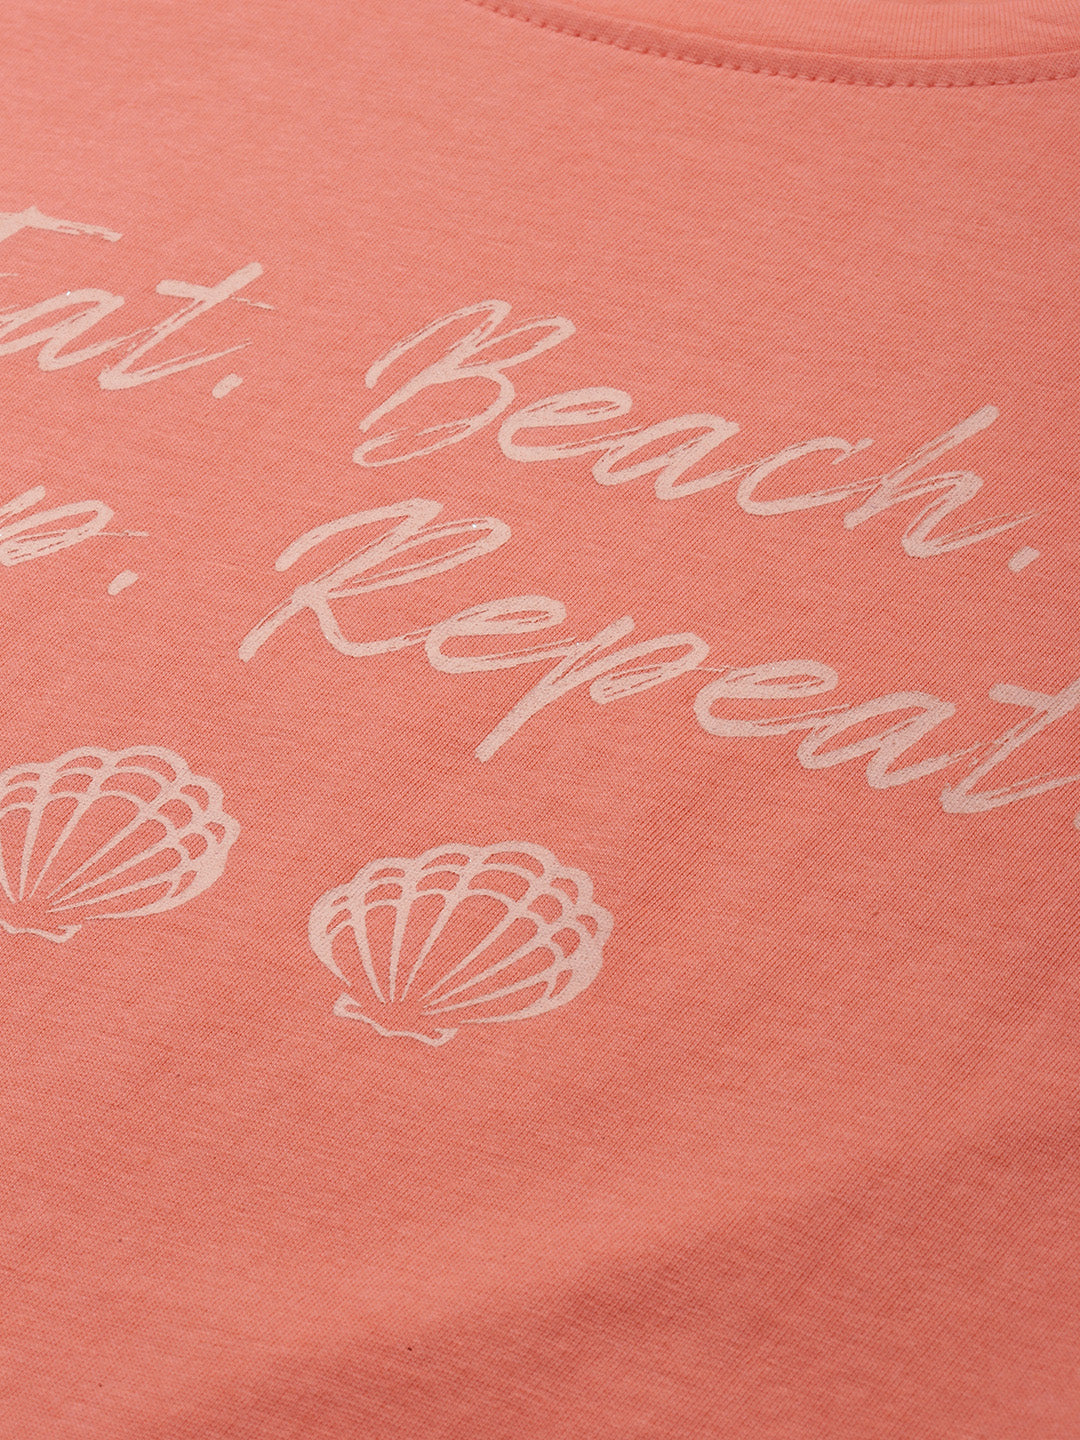 Beachy Print Shorts Set in Sunset Orange - 100% Cotton